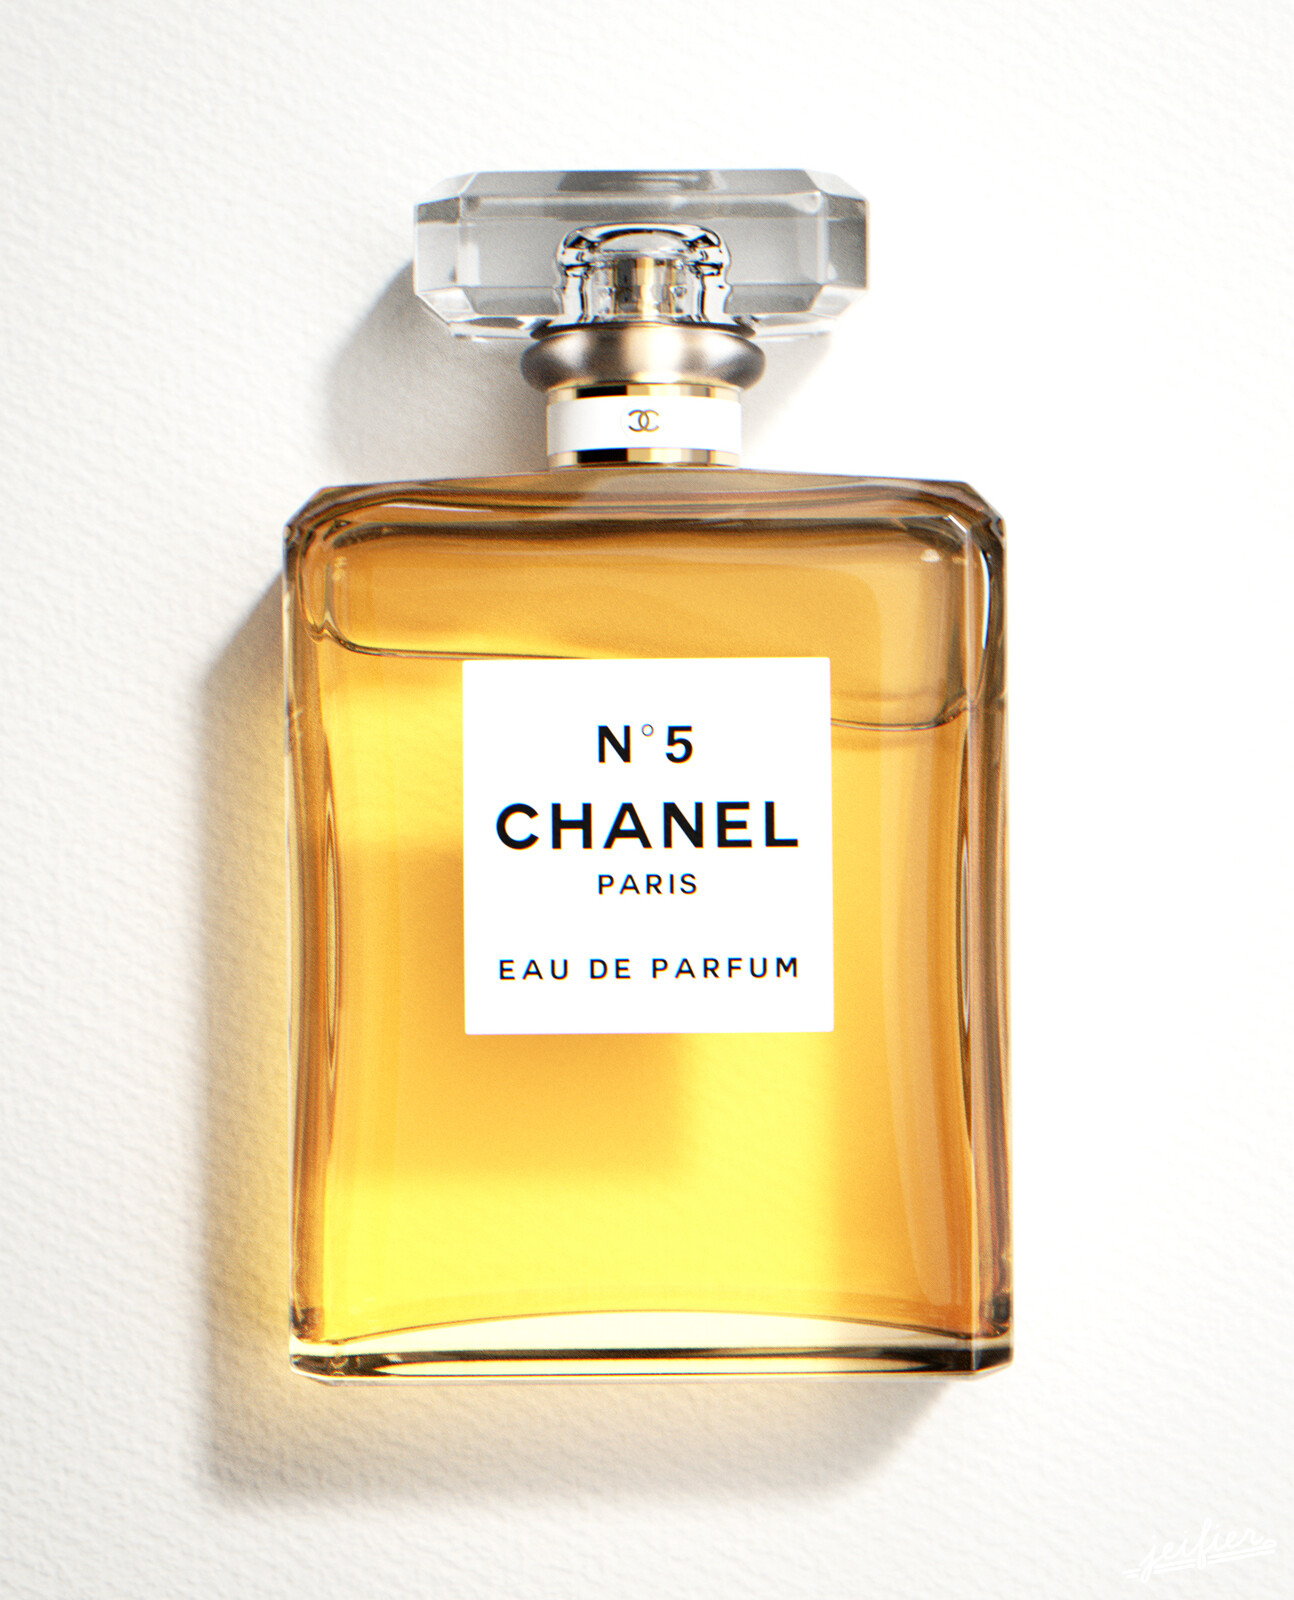 CHANEL No 5 Parfum - Reviews